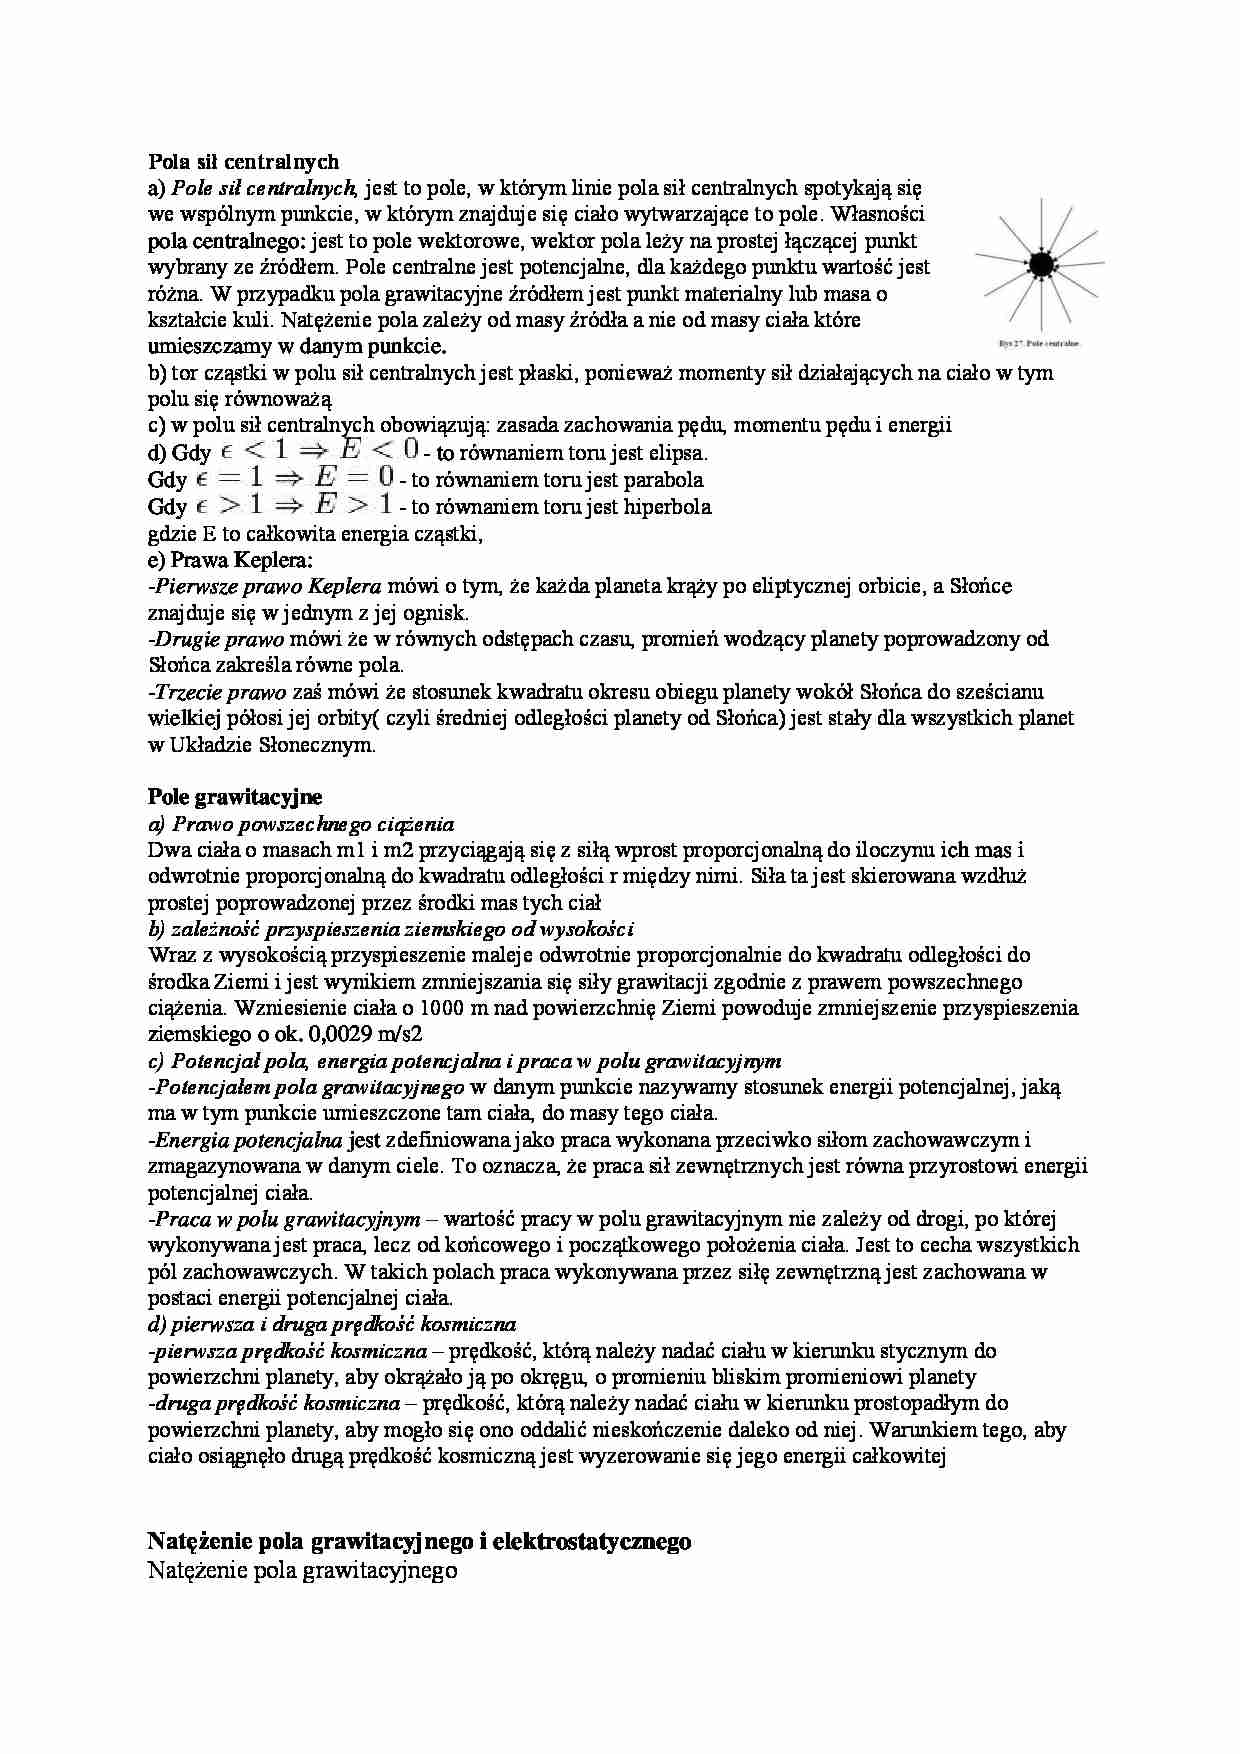 Pola sił centralnych i grawitacyjne - omówienie - strona 1